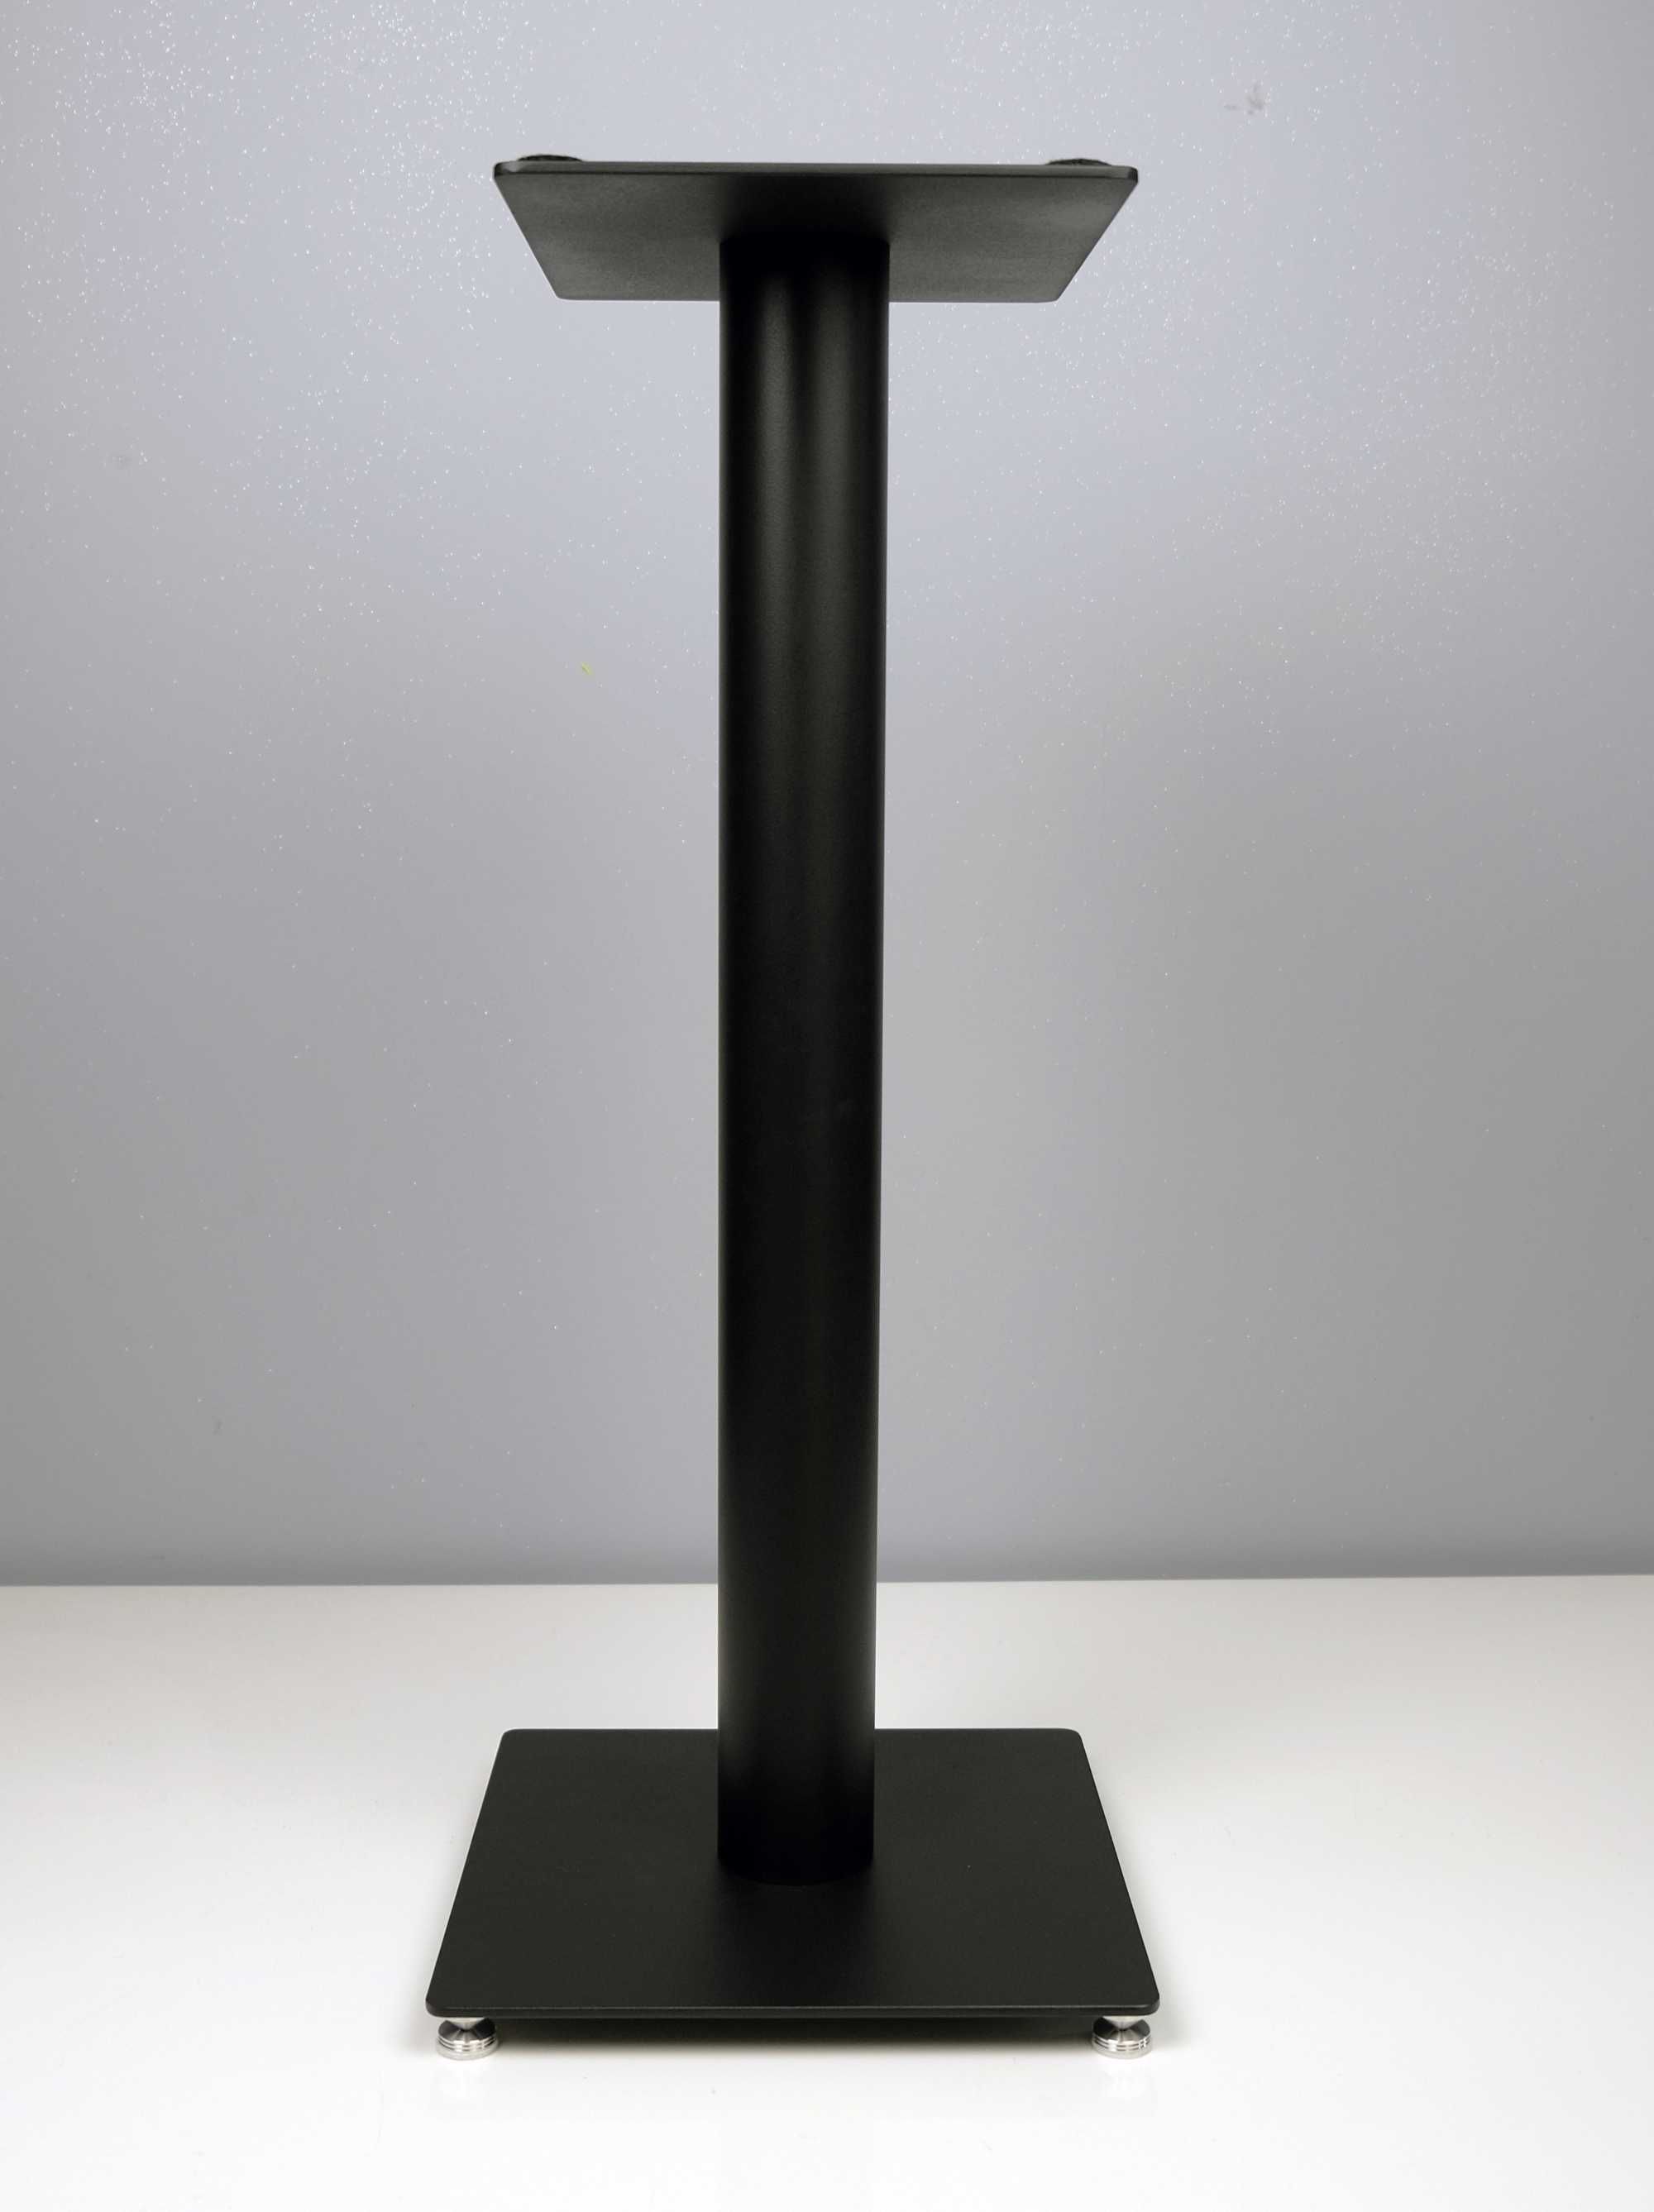 2x stand stojak stojaki podstawy pod kolumny głośniki podstawka 60cm